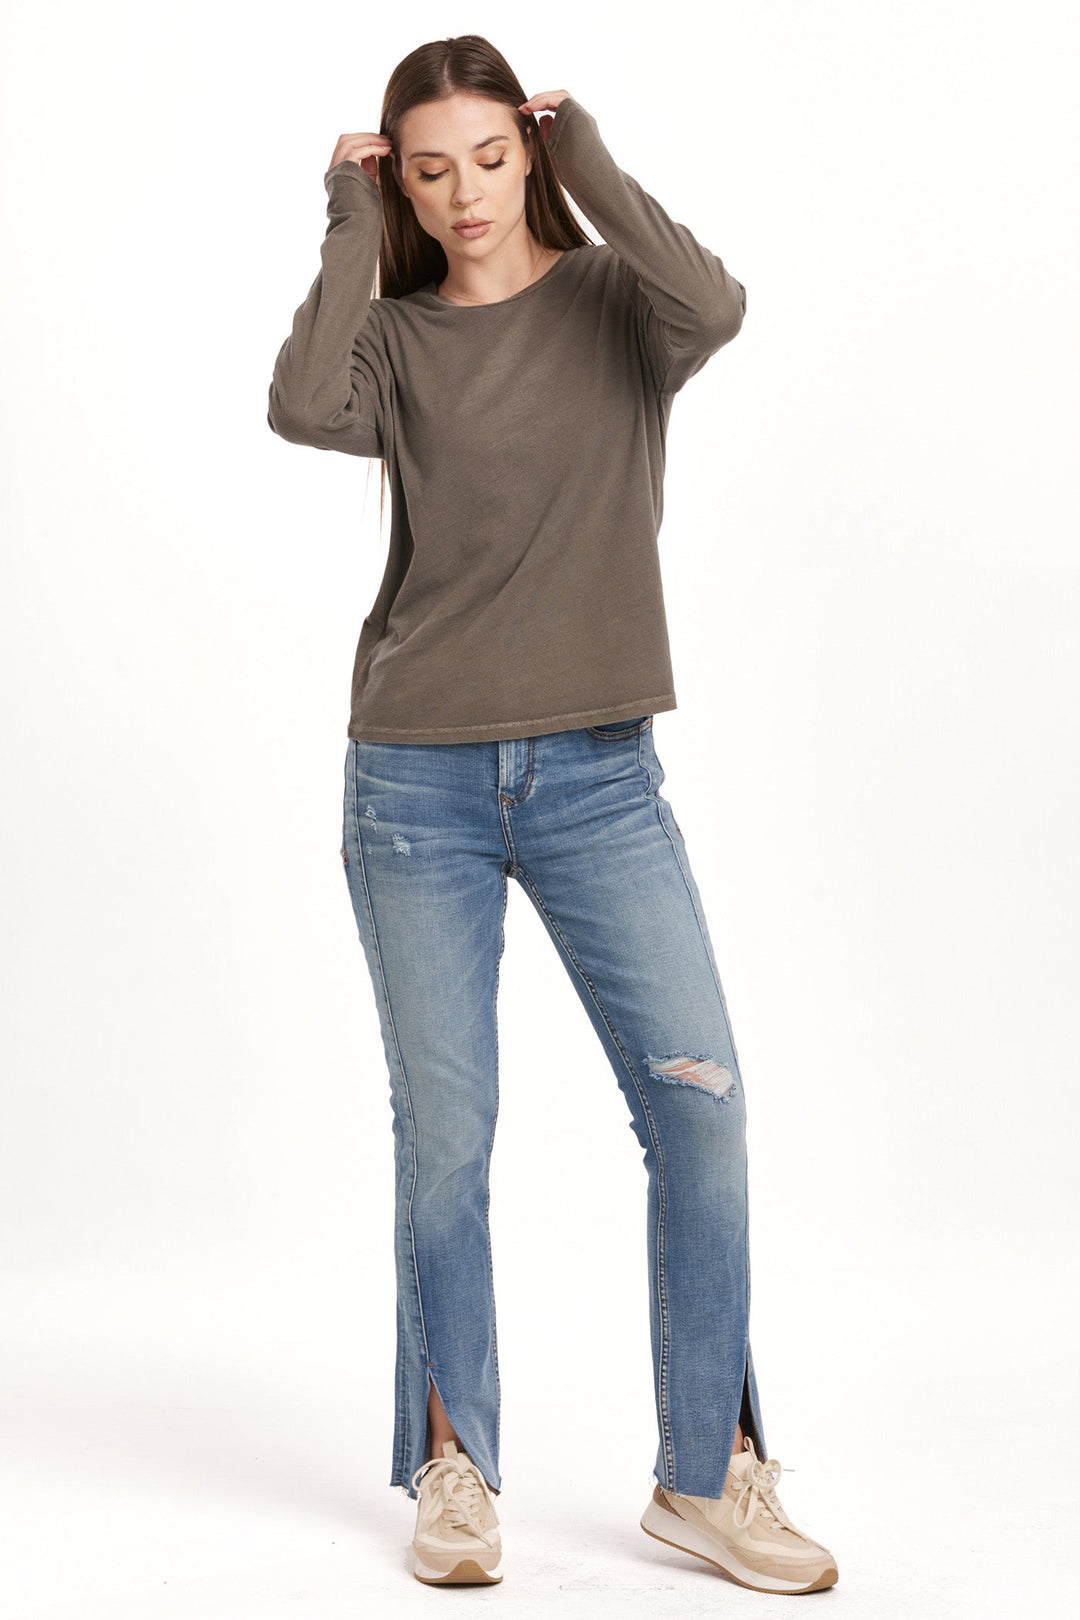 image of a female model wearing a KATHY LONG SLEEVE JERSEY TEE CHARCOAL DEAR JOHN DENIM 